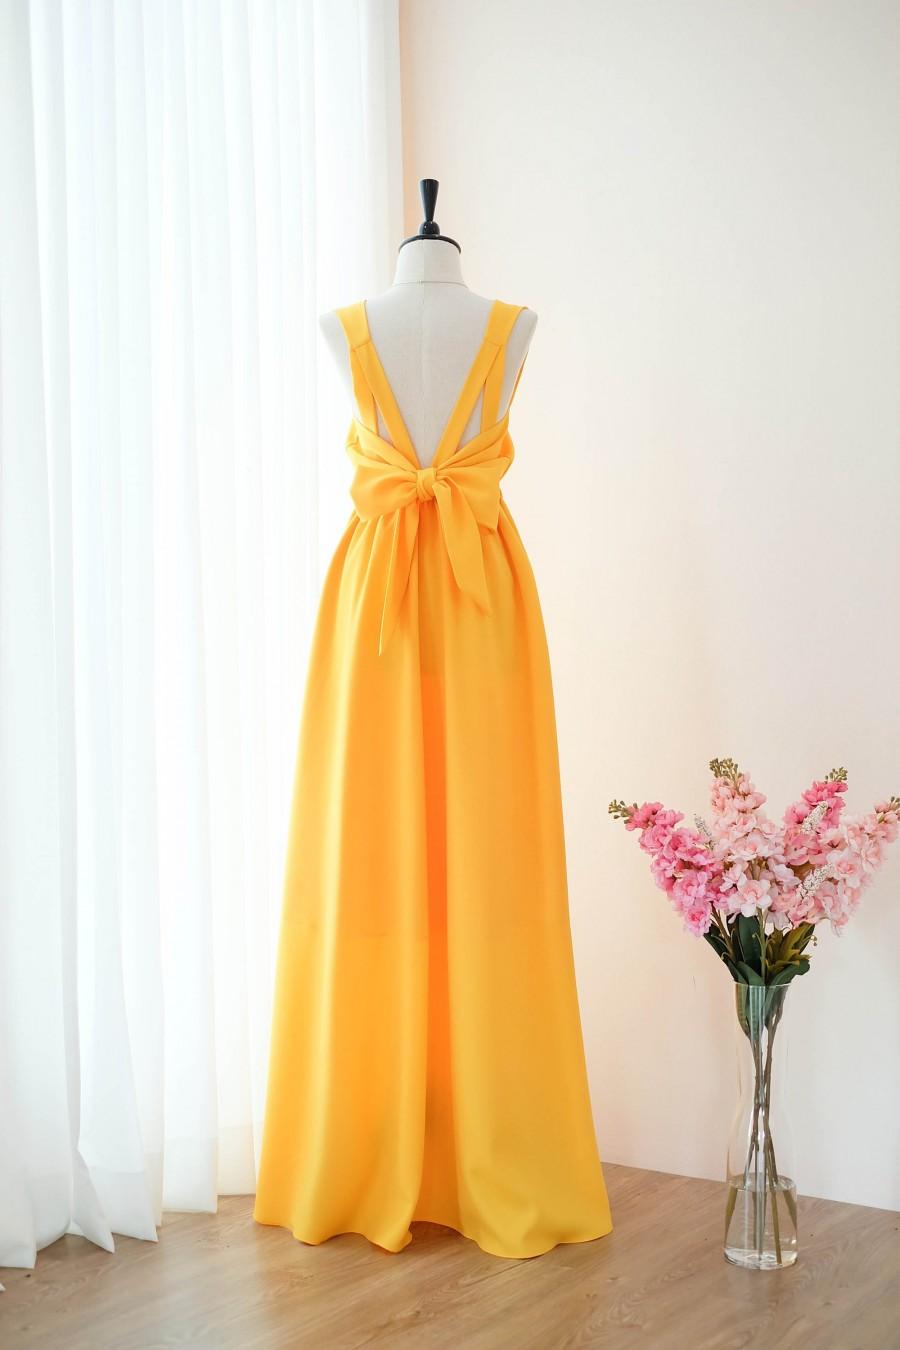 Hochzeit - Gold yellow dress Long Bridesmaid dress Wedding Dress Long Prom dress Party dress Cocktail dress Maxi dress Evening Gown